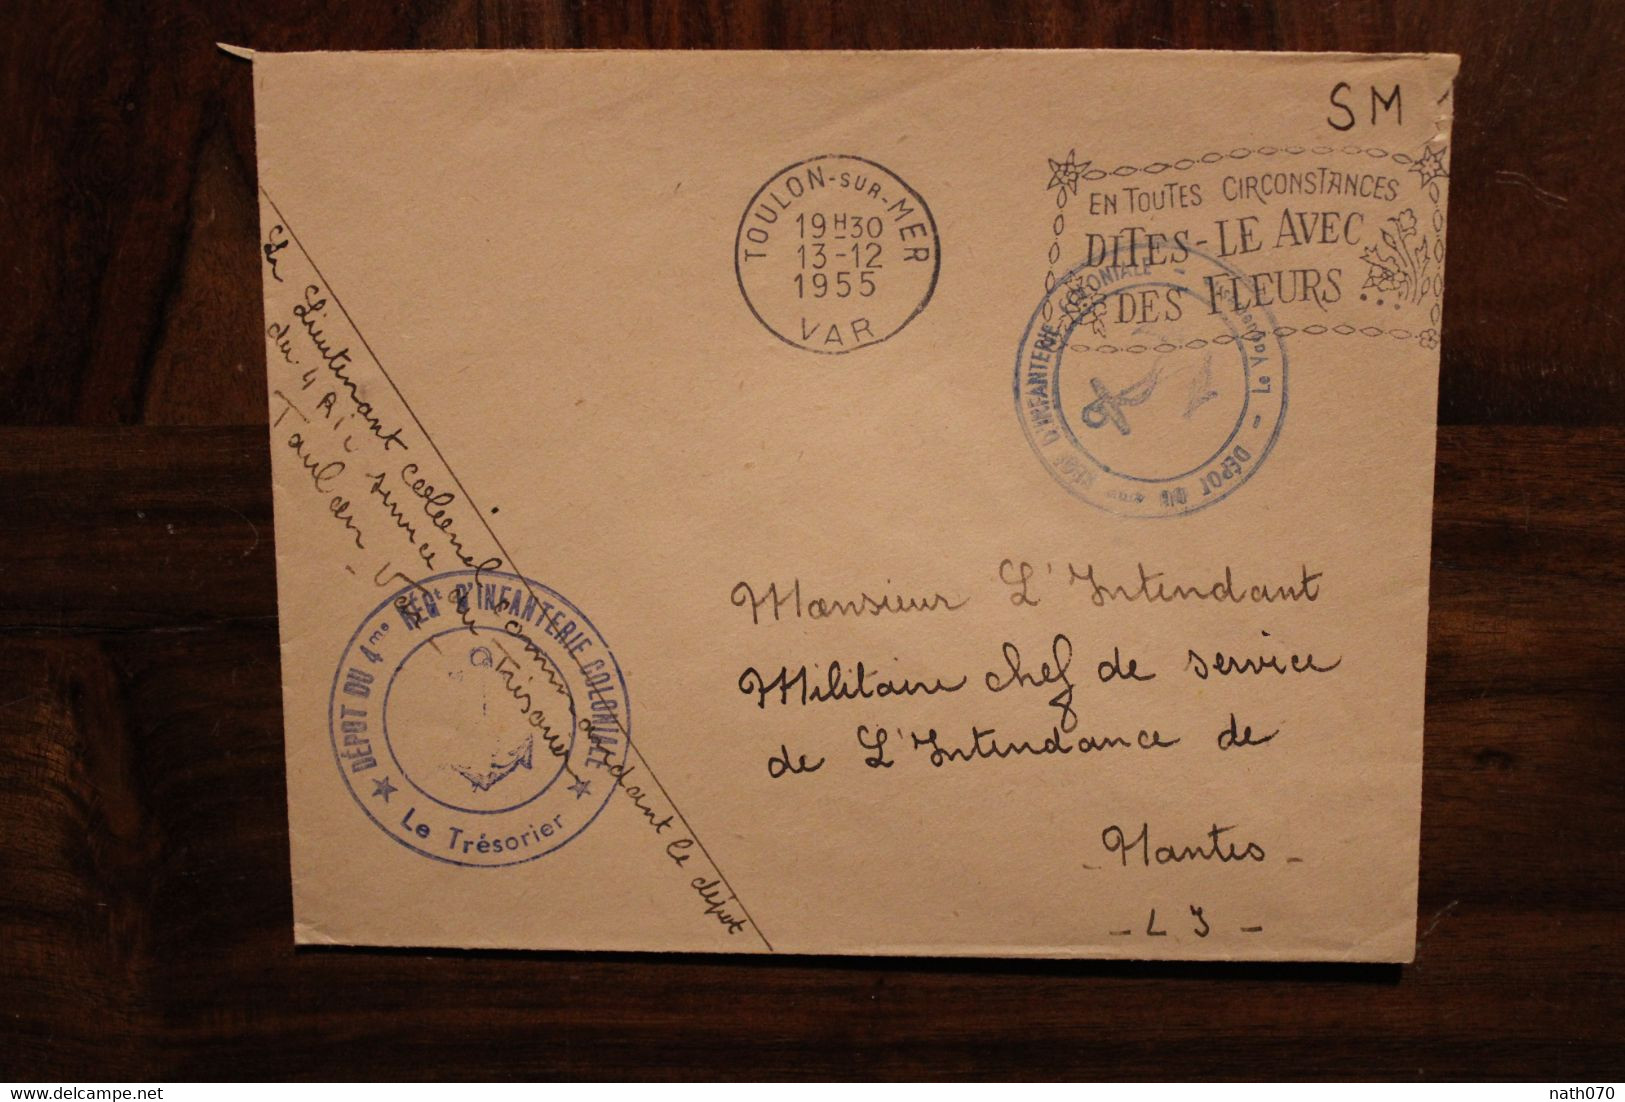 1959 4e Régiment Infanterie Coloniale Par Avion FM Franchise Militaire SM Cover Oblit Mécanique Pub - Military Postage Stamps